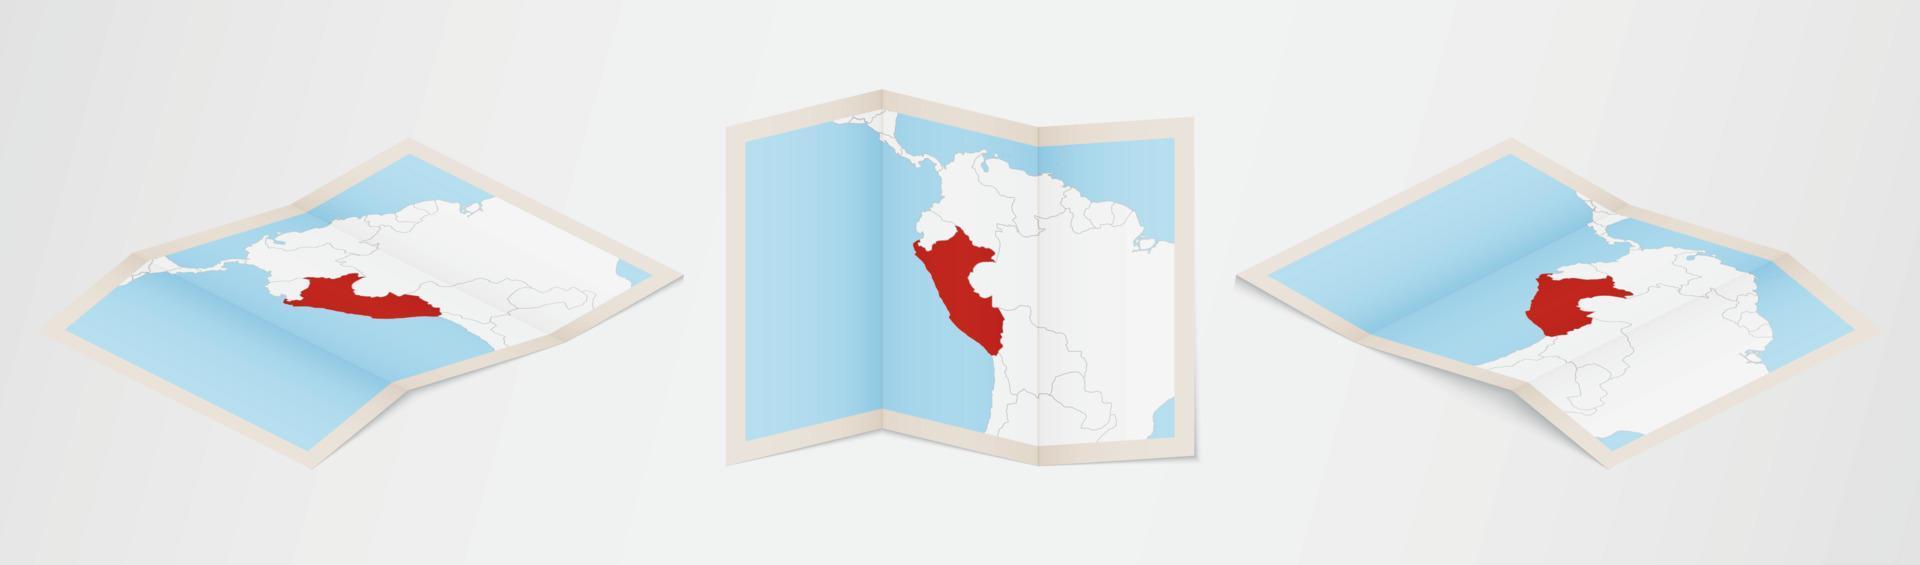 Faltkarte von Peru in drei verschiedenen Versionen. vektor